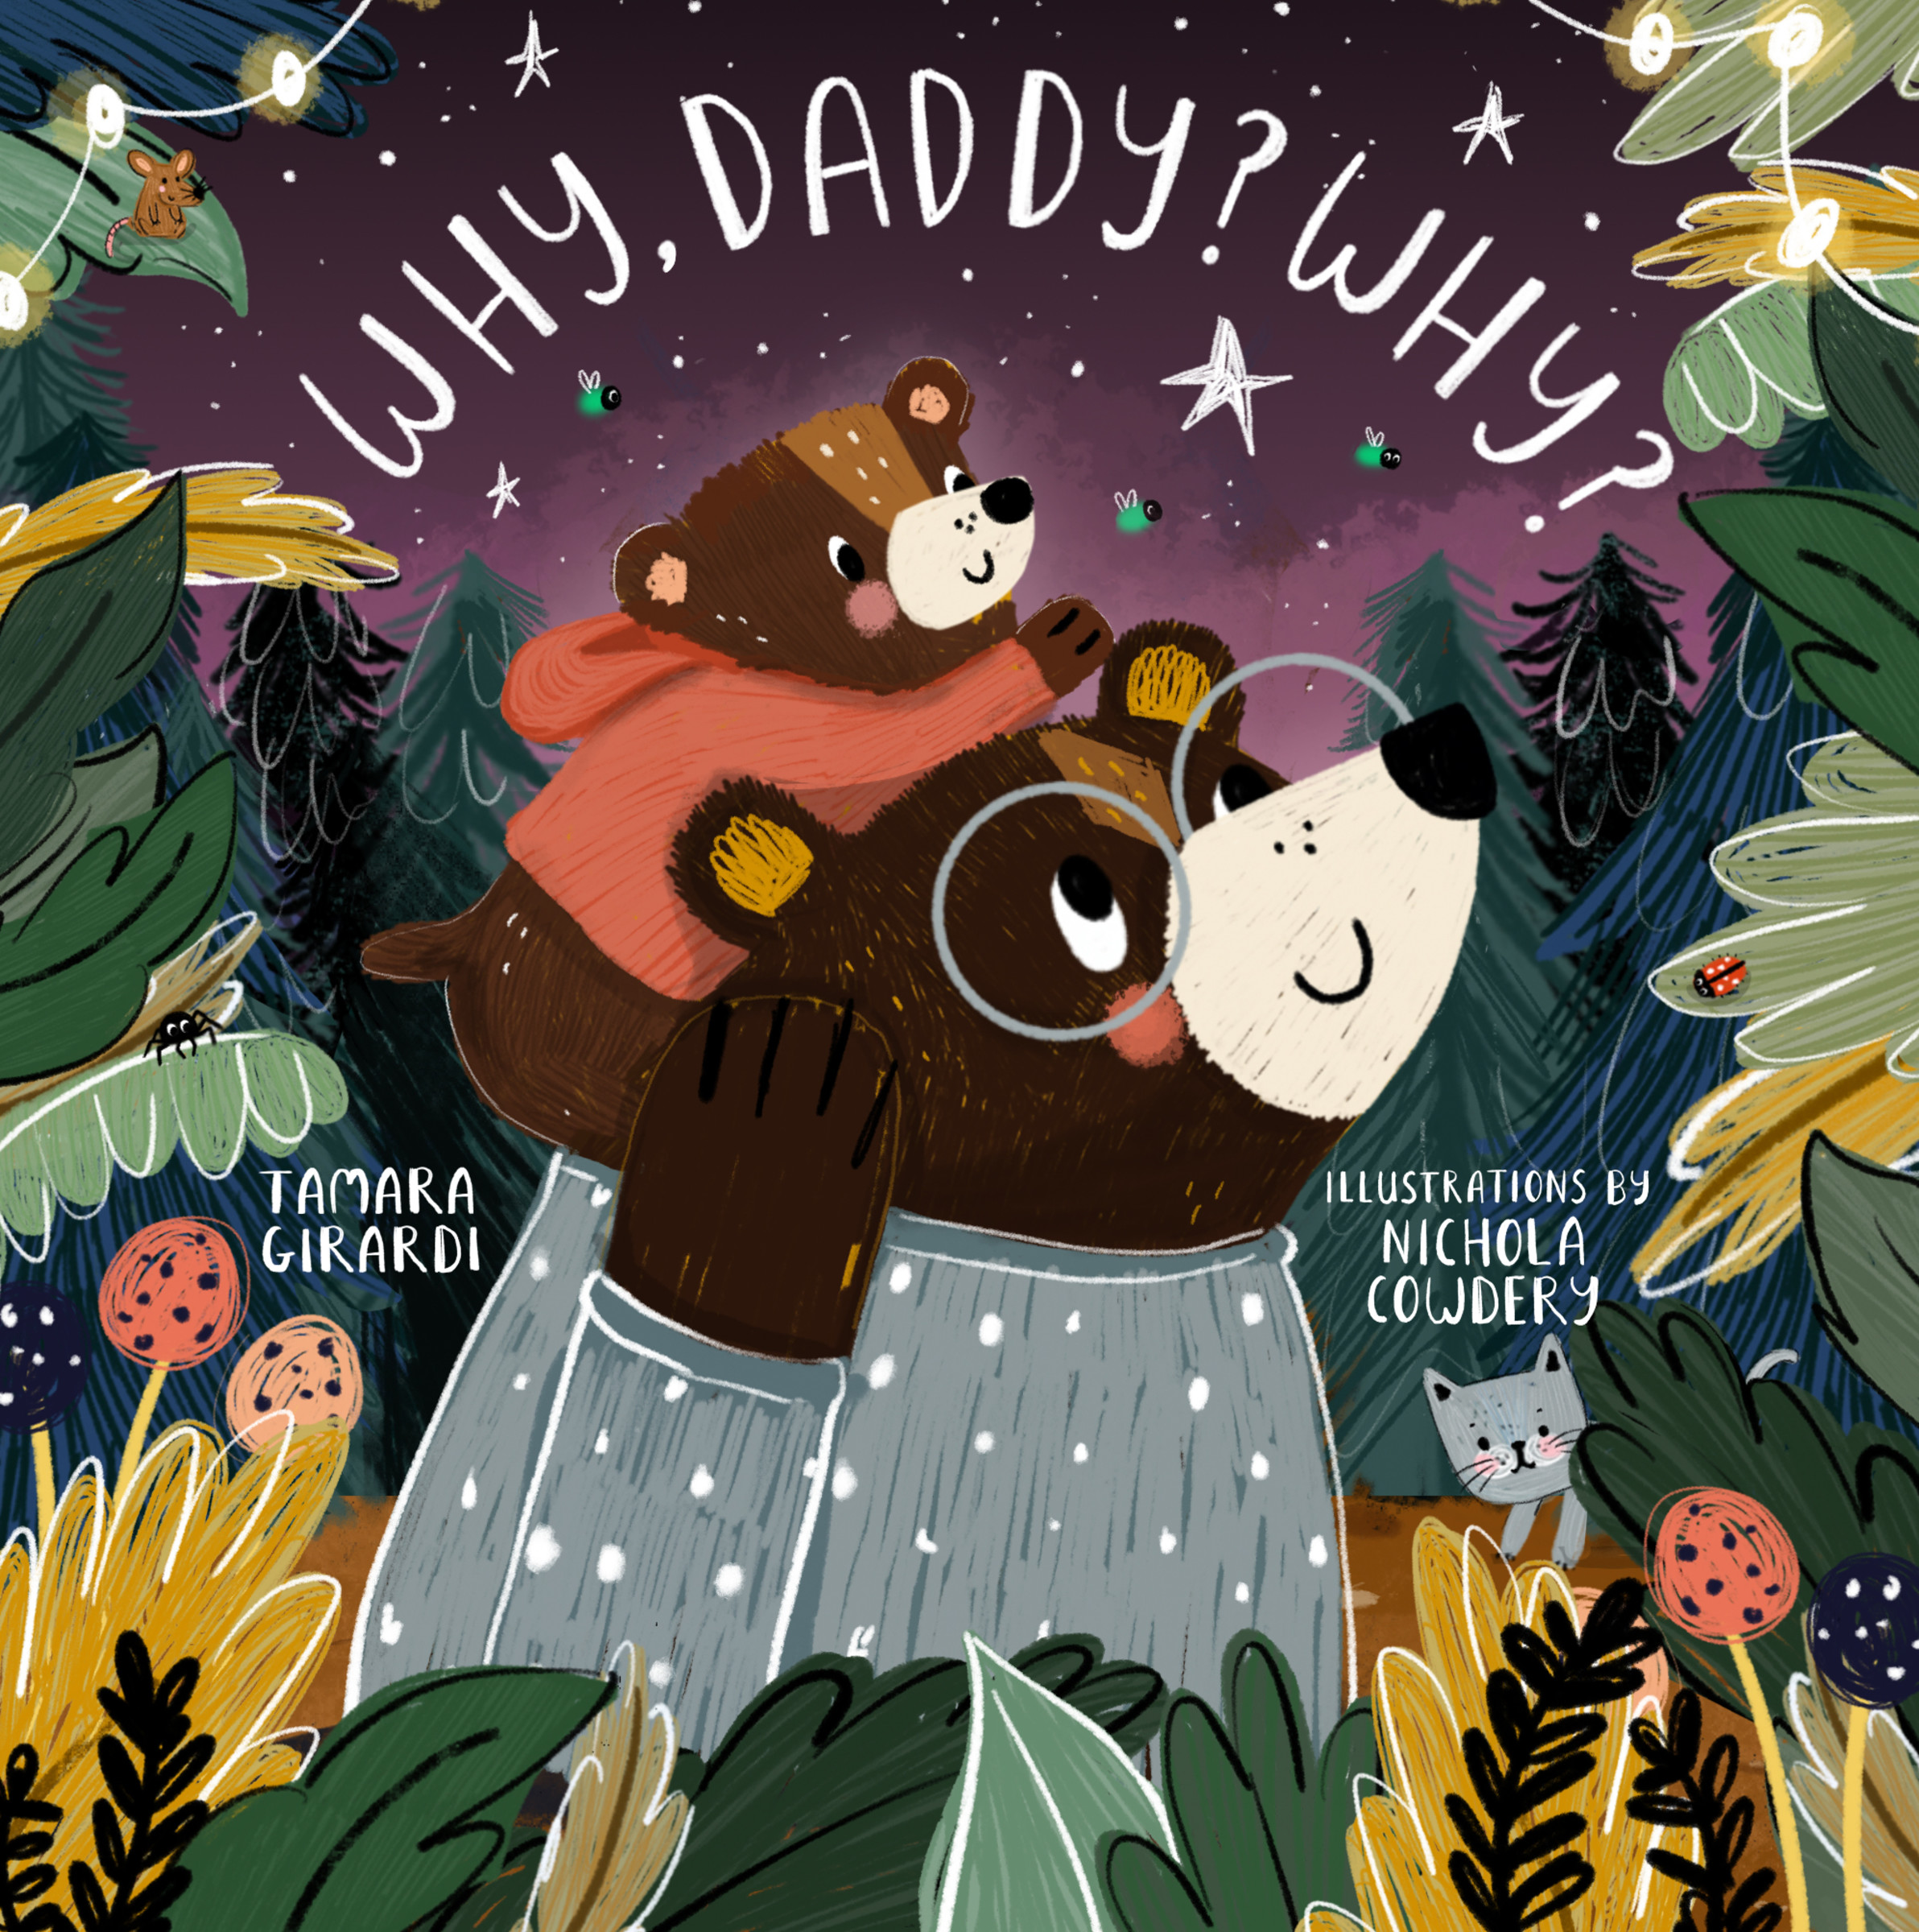 Why, Daddy? Why? | Girardi, Tamara (Auteur) | Cowdery, Nichola (Illustrateur)